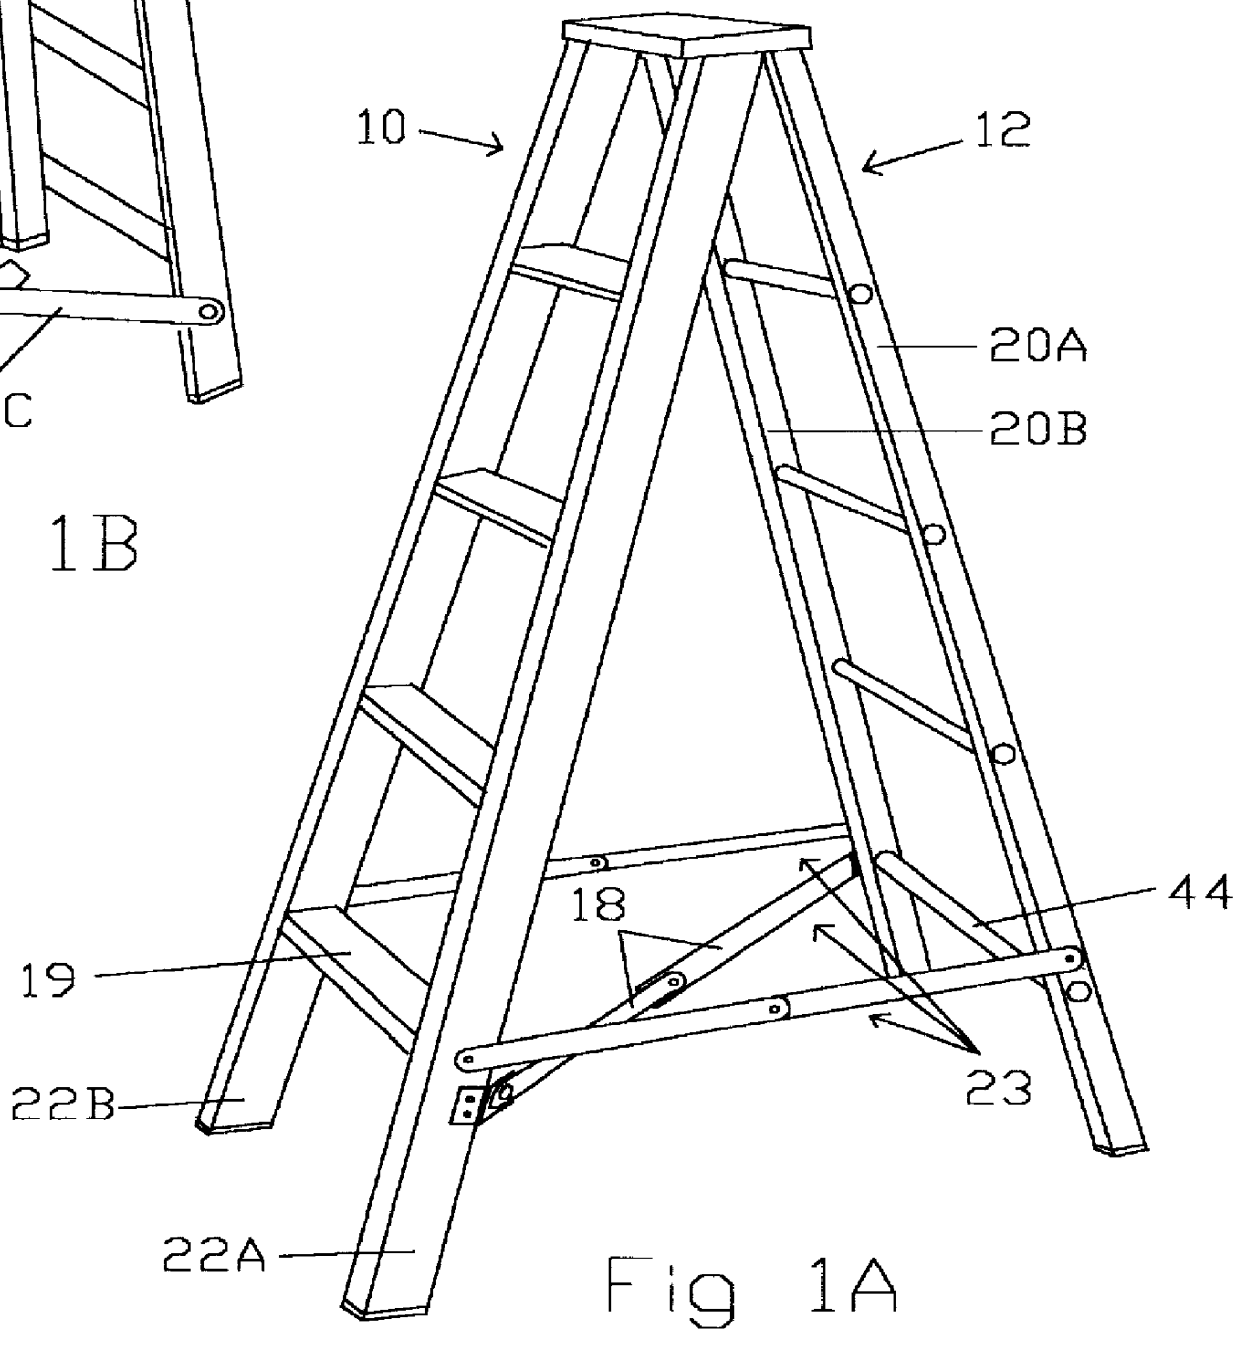 Ladder stabilizing cross brace